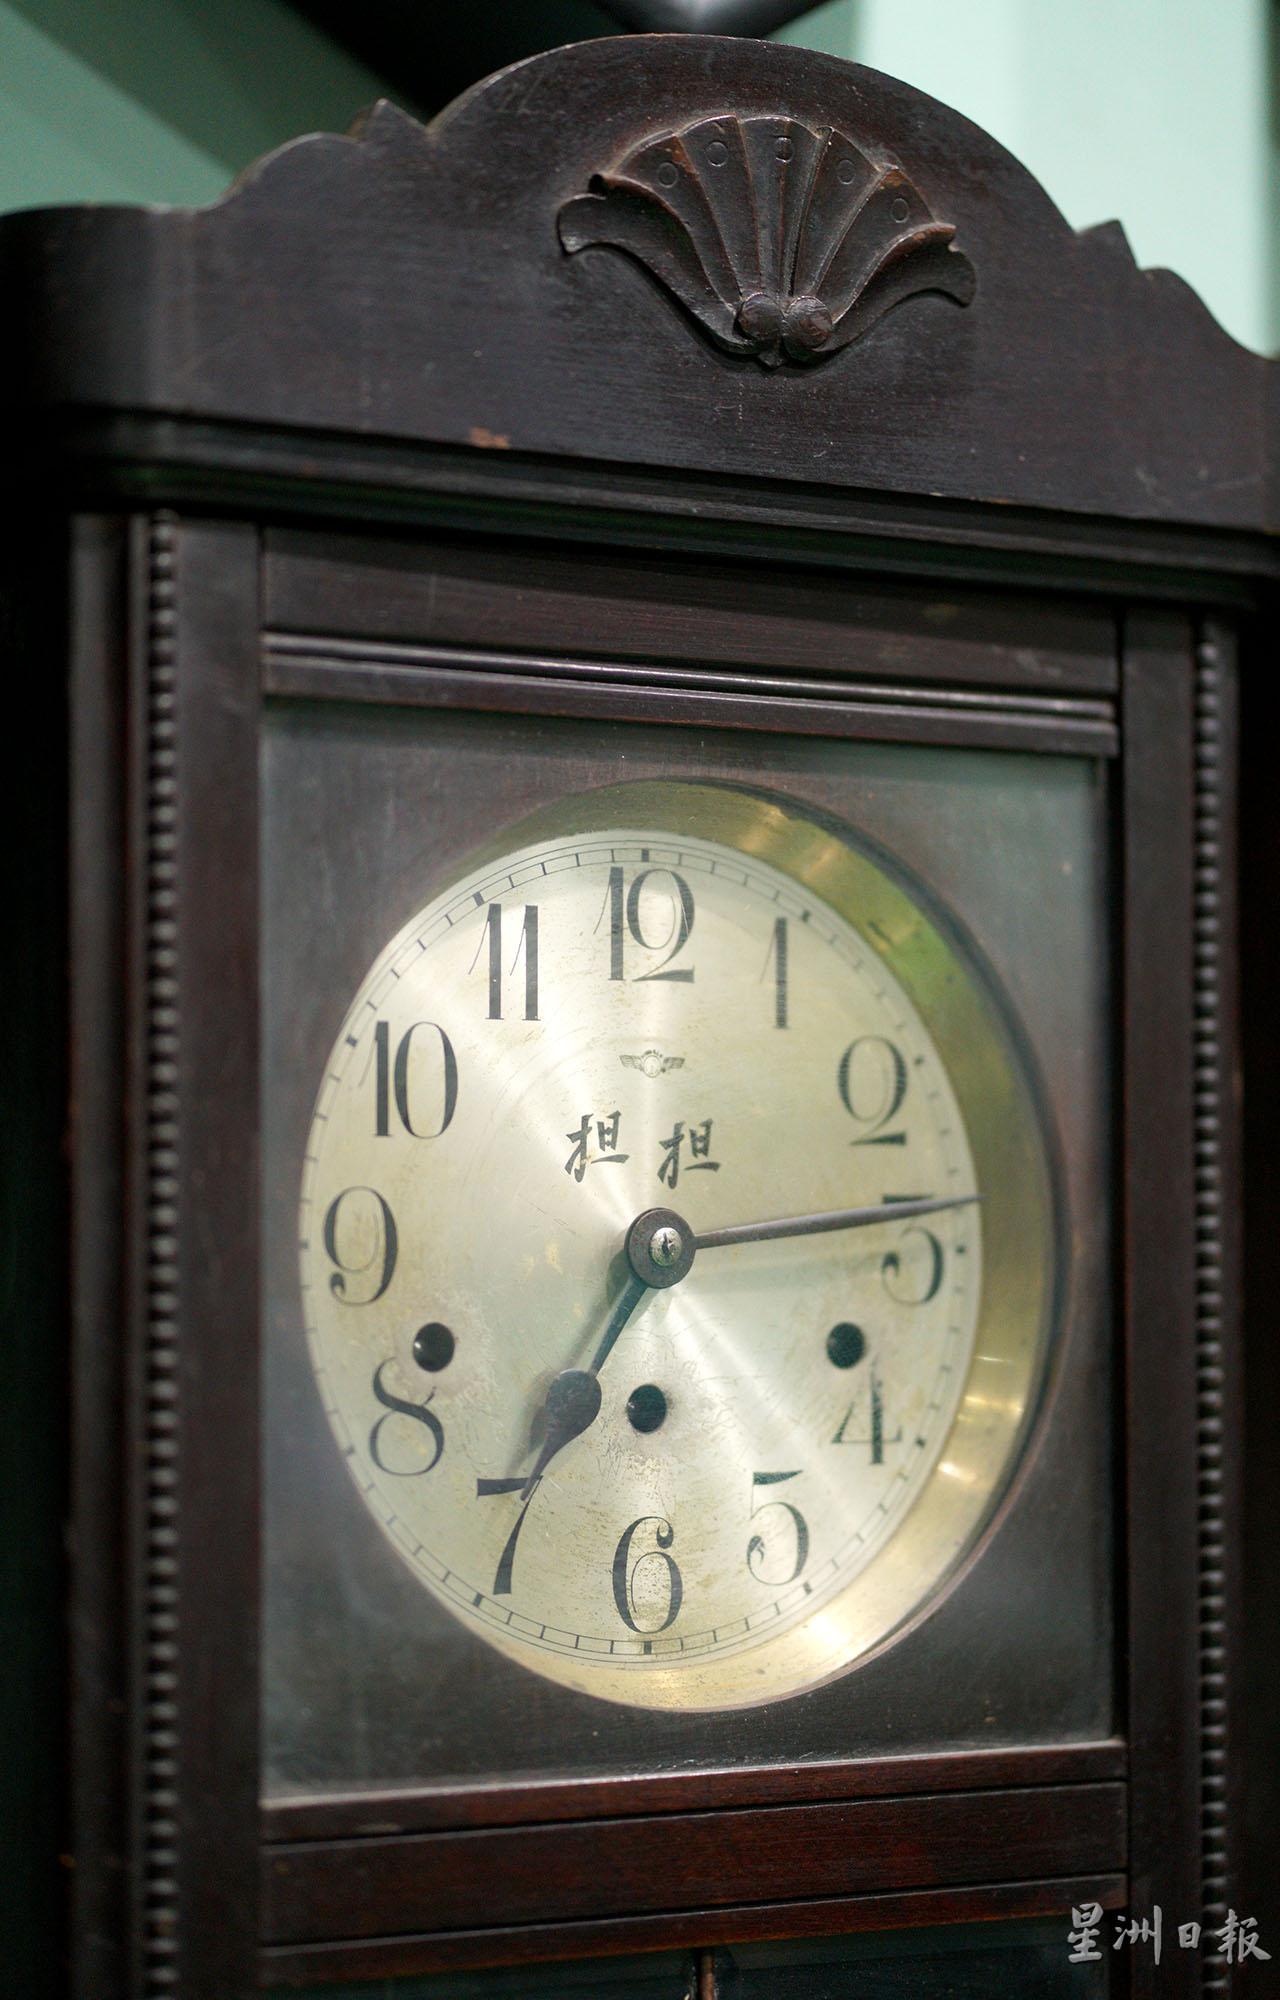 刻著“担担”字眼的钟，原来有一段故事，与当年从事锡矿业者有关，据说是霹雳州独有的“担担钟”。

